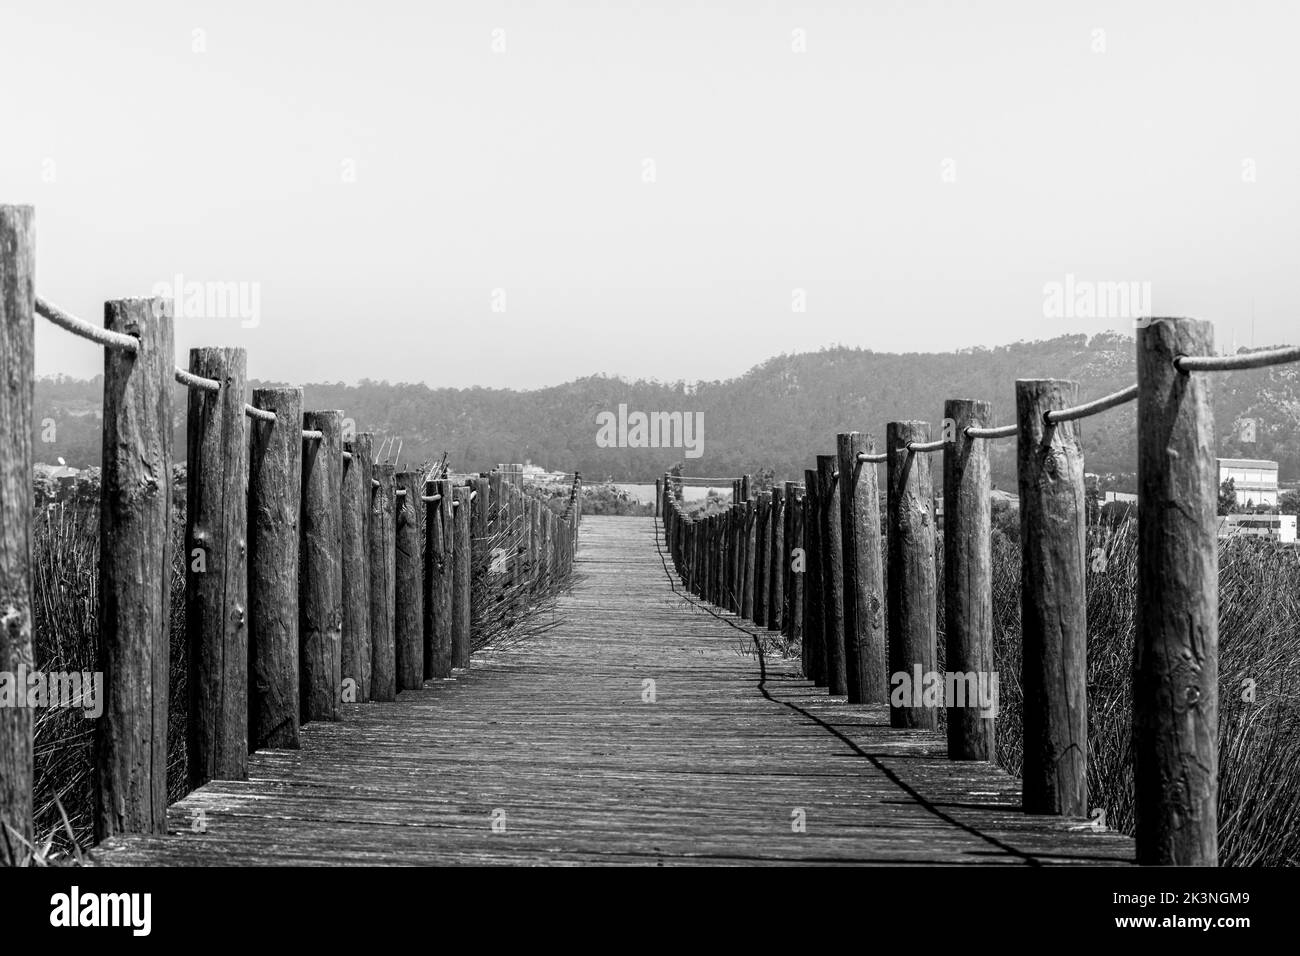 Design in legno, vista sul ponte pedonale della spiaggia. Luoghi tranquilli, salute mentale. Foto Stock